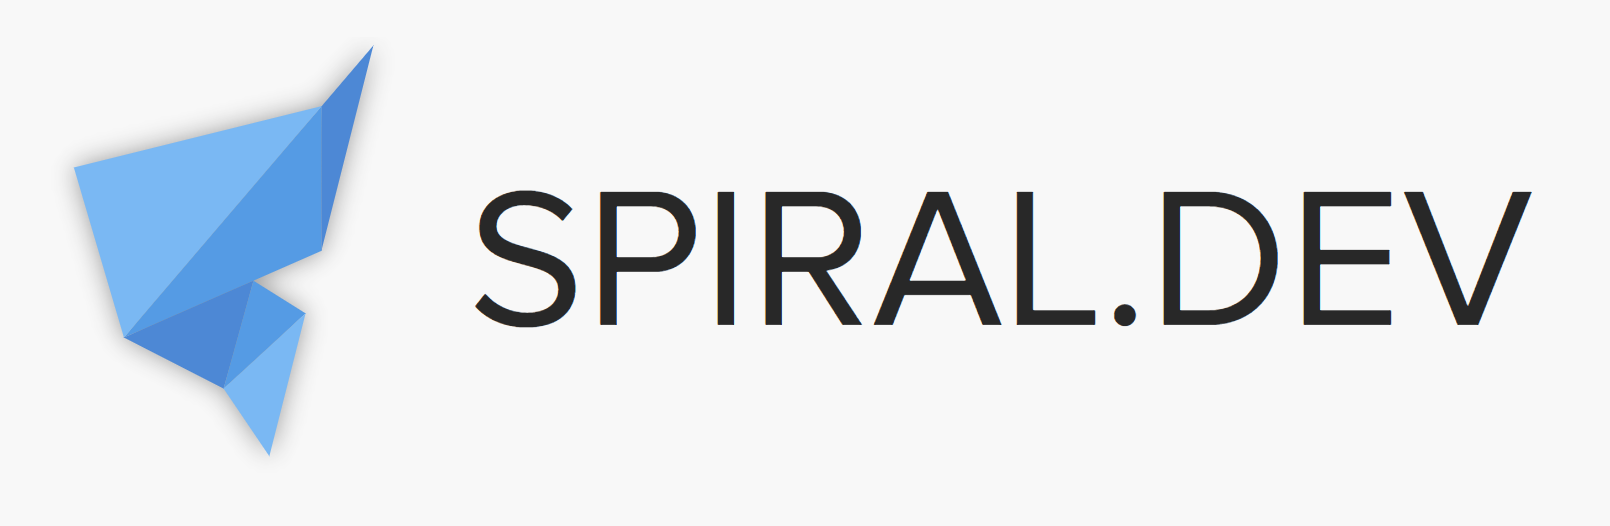 Spiral: высокопроизводительный PHP-Go фреймворк - 1